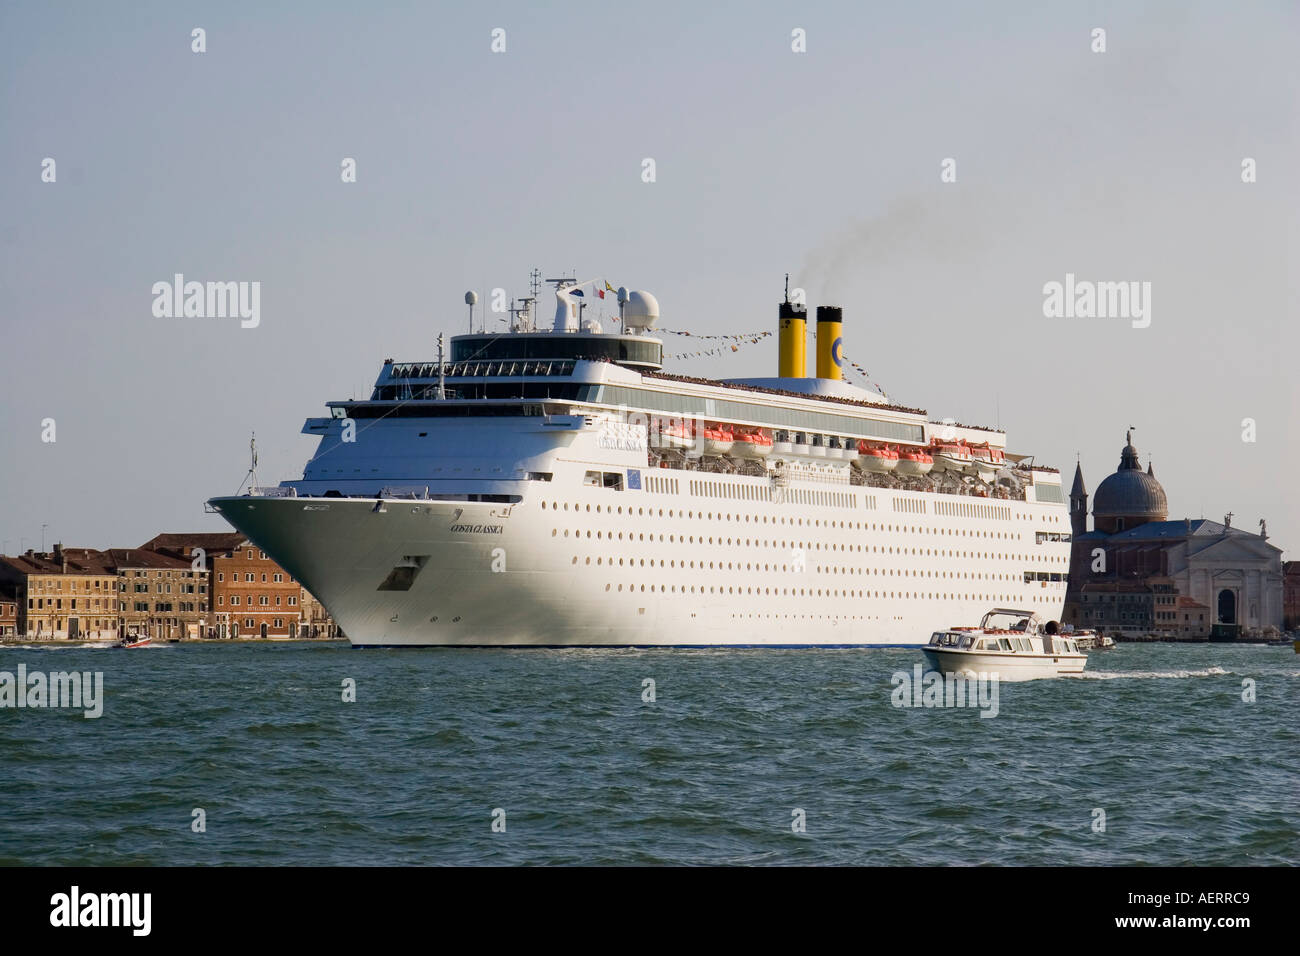 Costa Classica cruise liner arriving in the Canale della Giudecca Venice Italy Stock Photo